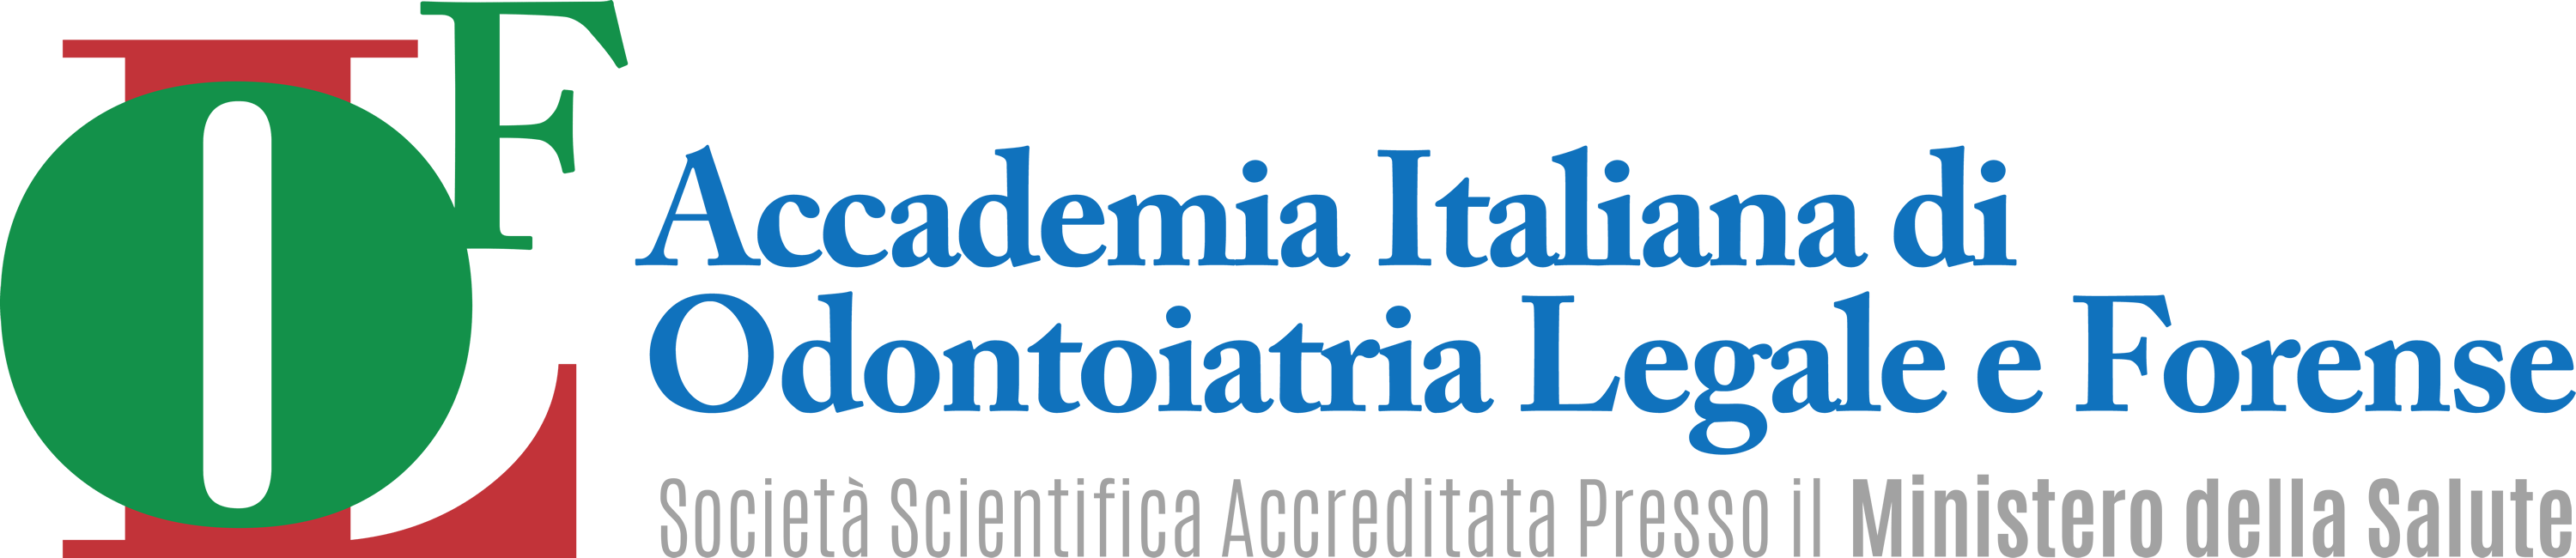 Accademia Italiana di Odontoiatria Legale e Forense